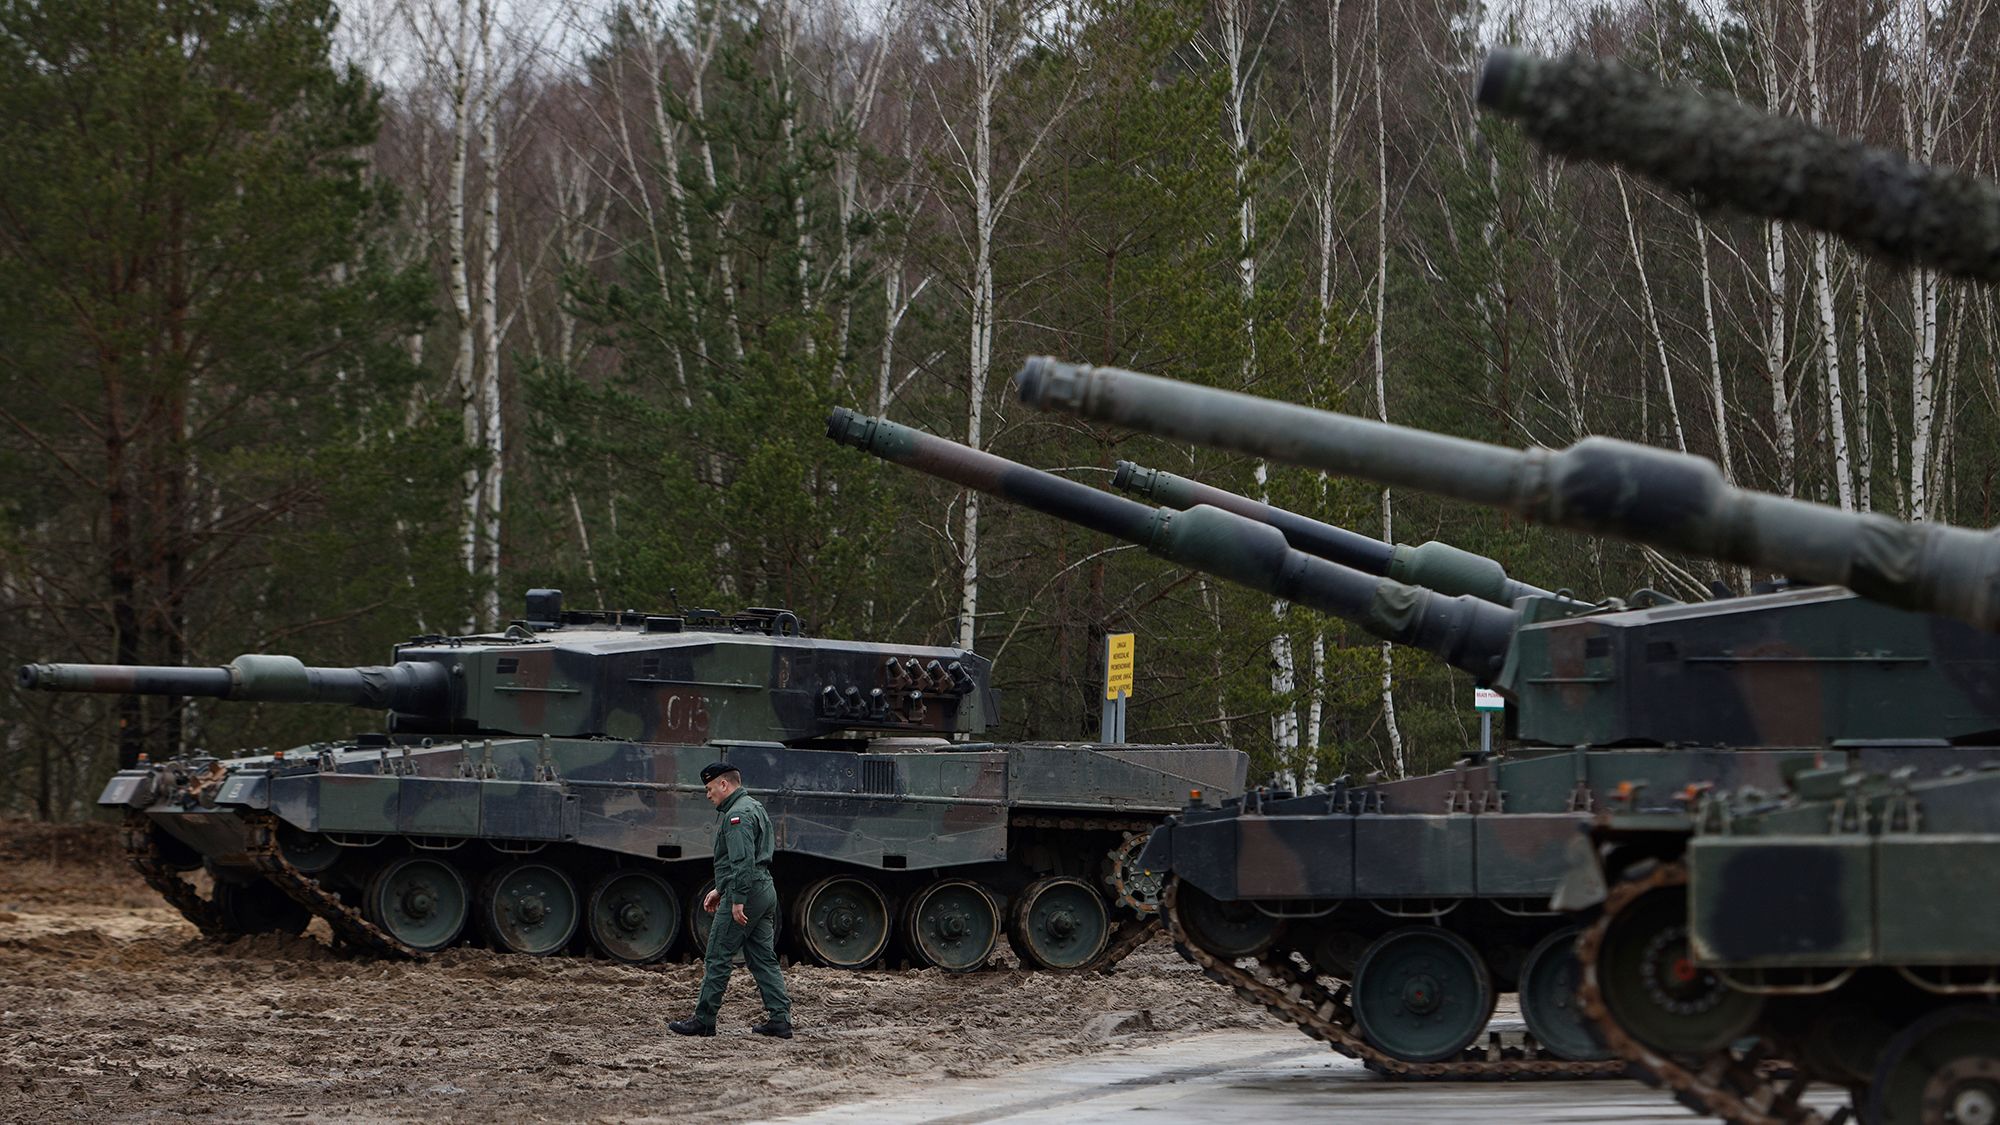 Οι Ουκρανοί συγκρίνουν τα LEO2A6 με τα δικά τους Τ-72 και Τ-80: «Η διαφορά είναι όπως μεταξύ Mercedes και Lada» (βίντεο)